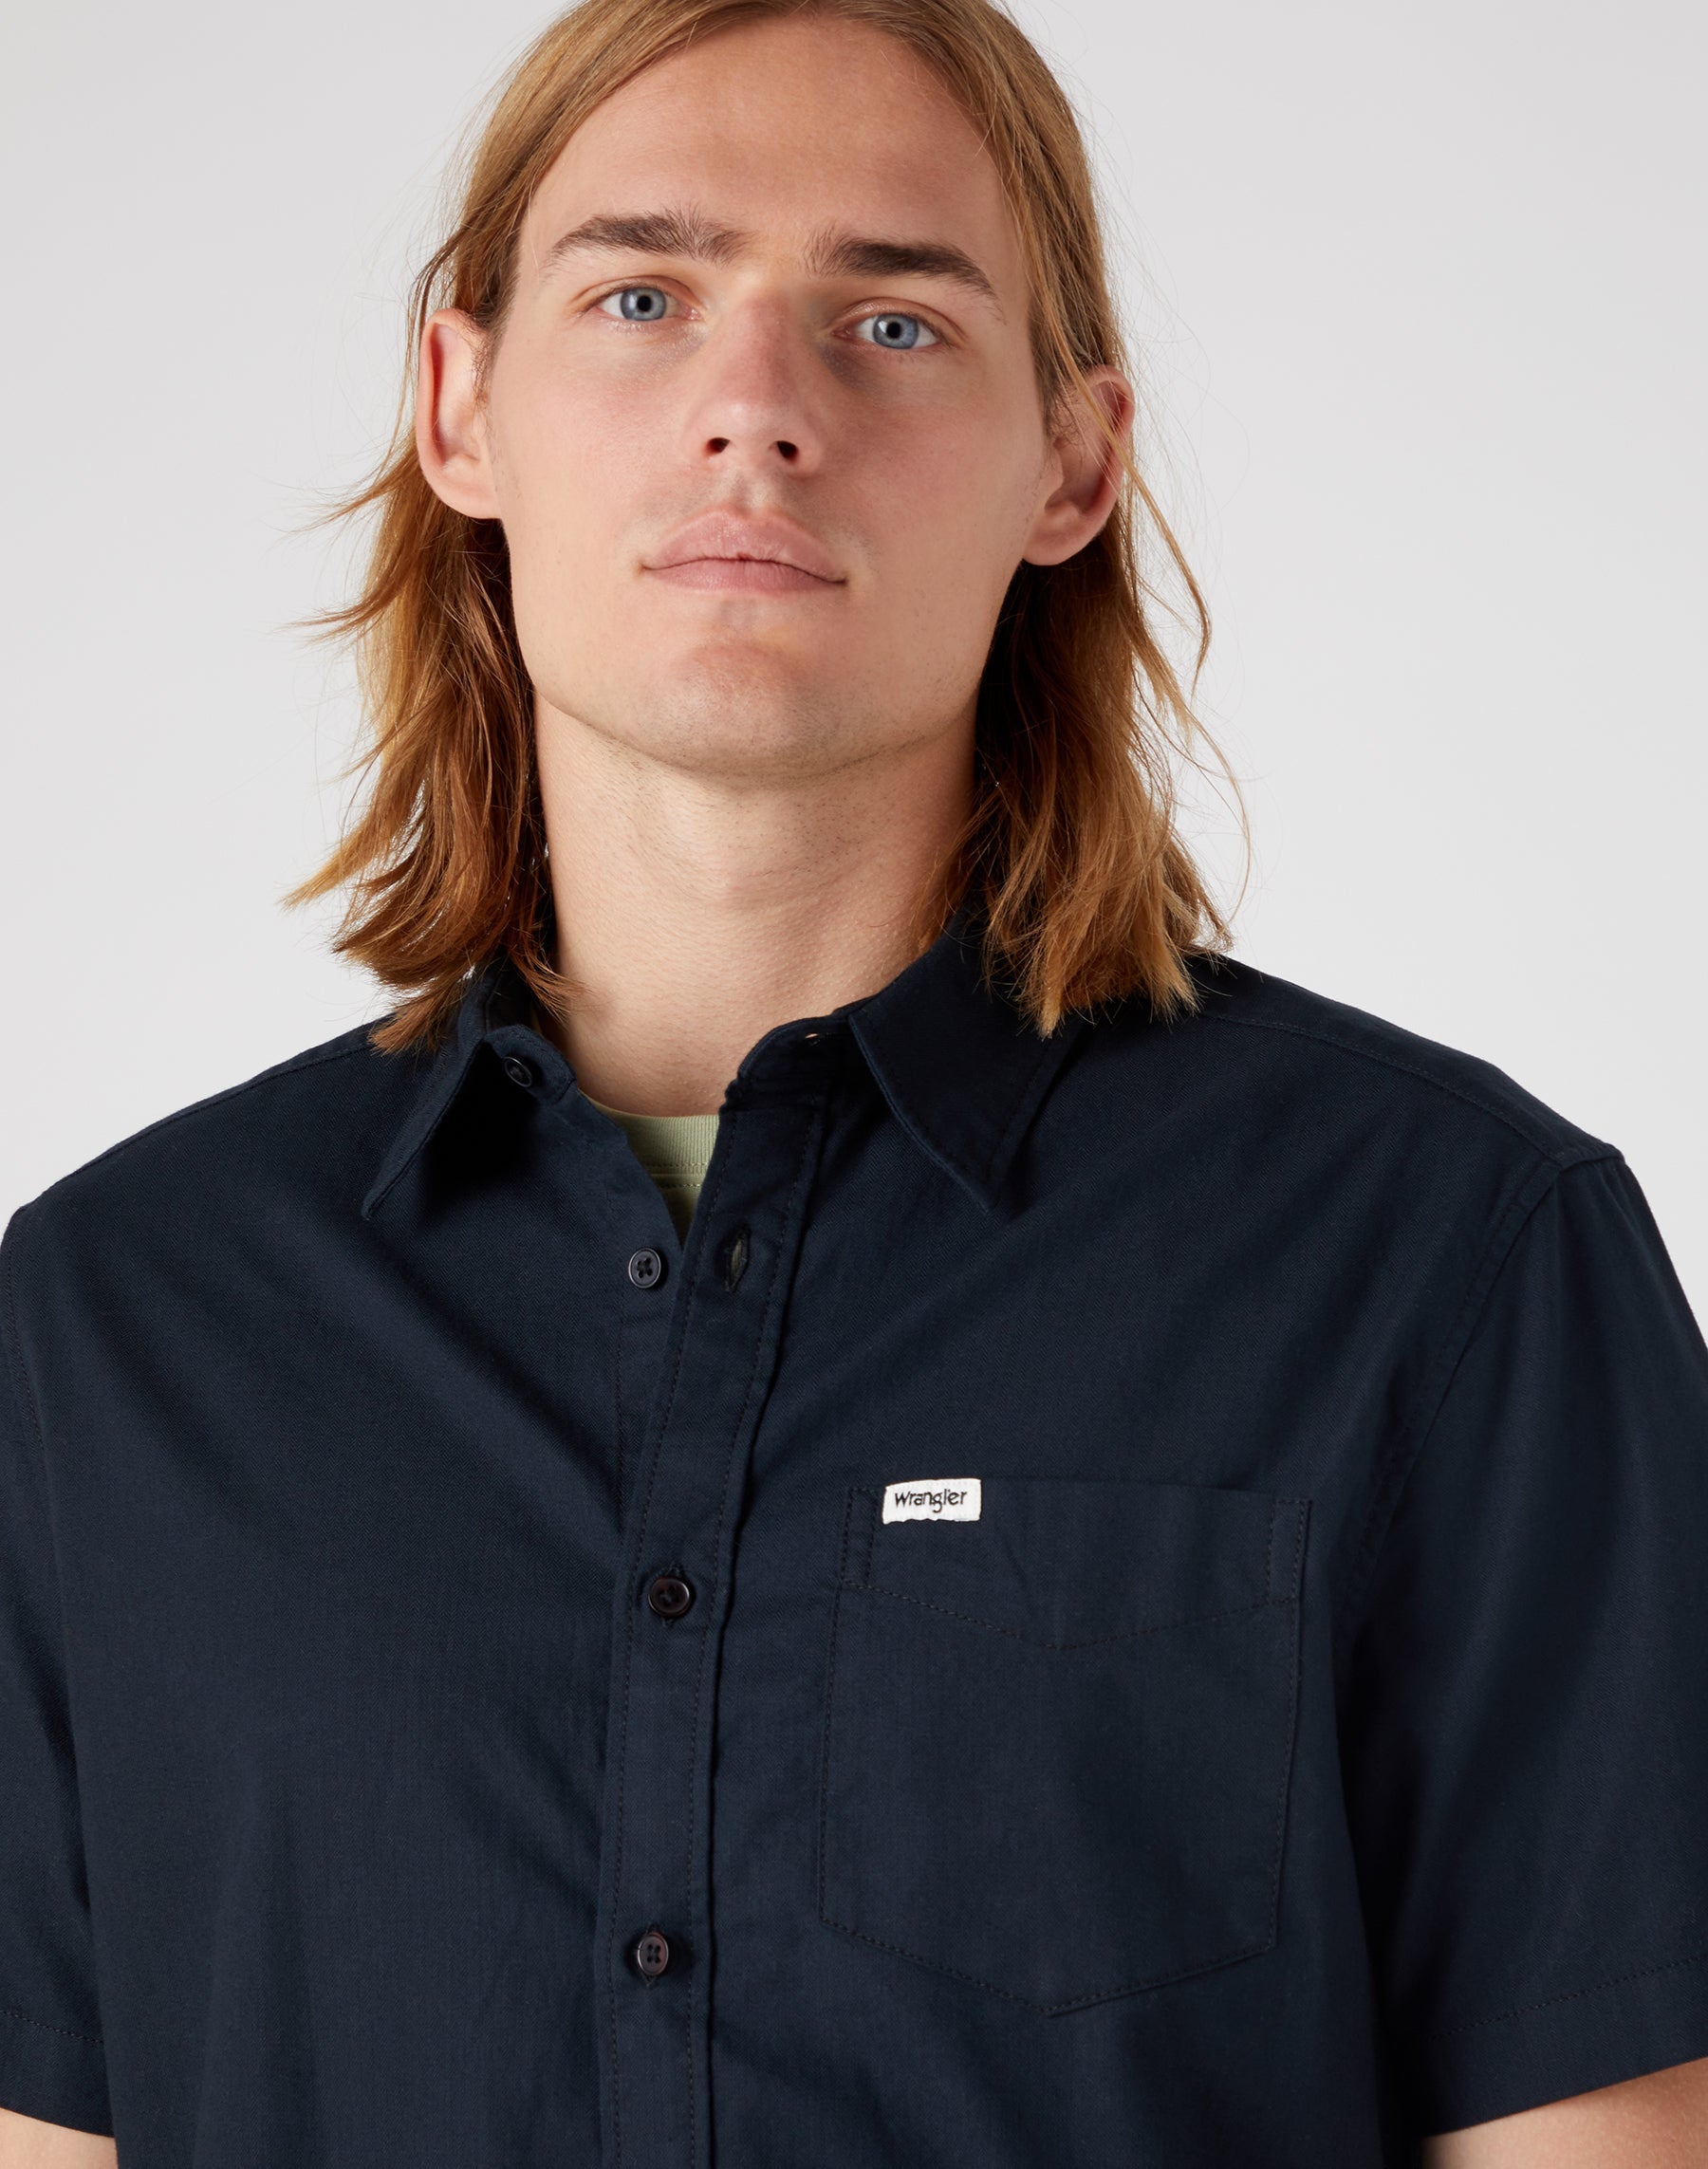 Kurzarm One Pocket Shirt in Black Hemden Wrangler   